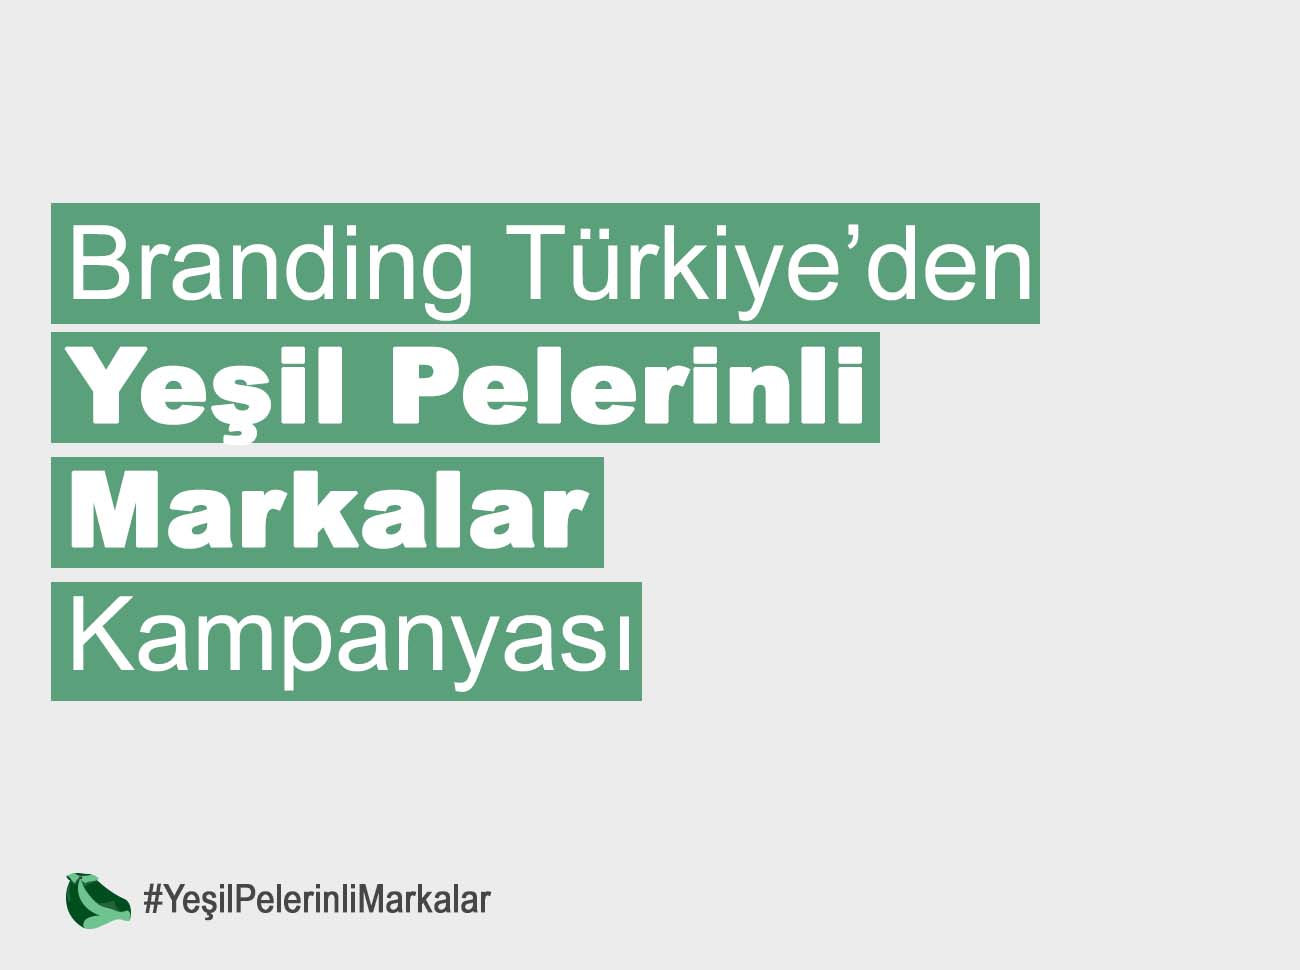 Branding Türkiye’den Yeşil Pelerinli Markalar Kampanyası